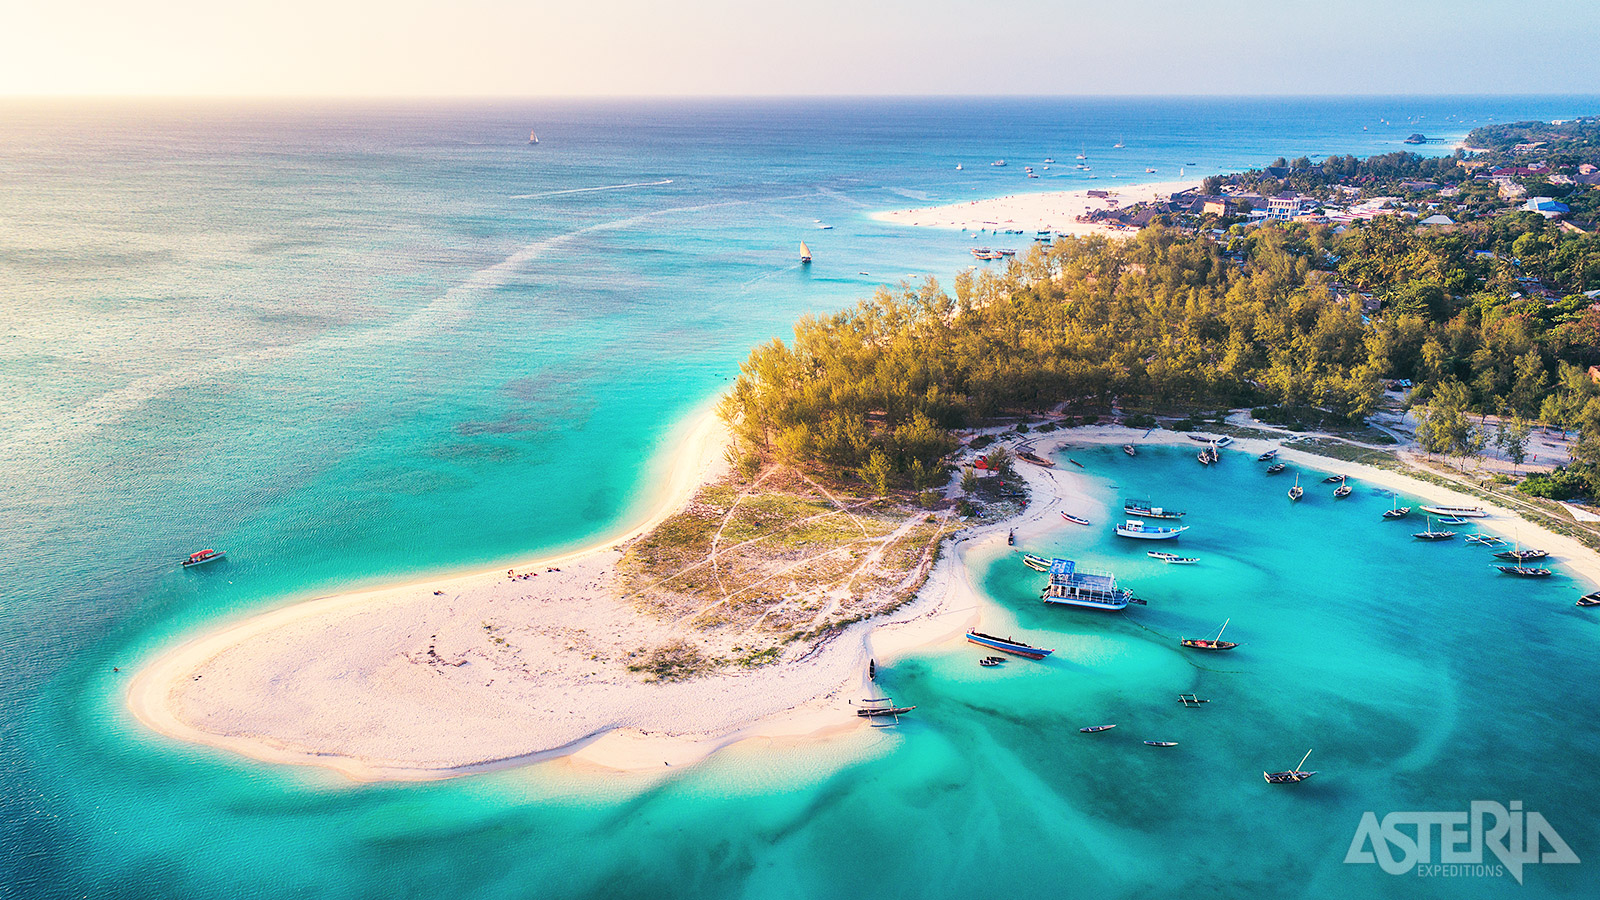 Hagelwitte stranden en het heldere water van Zanzibar weten iedereen te bekoren